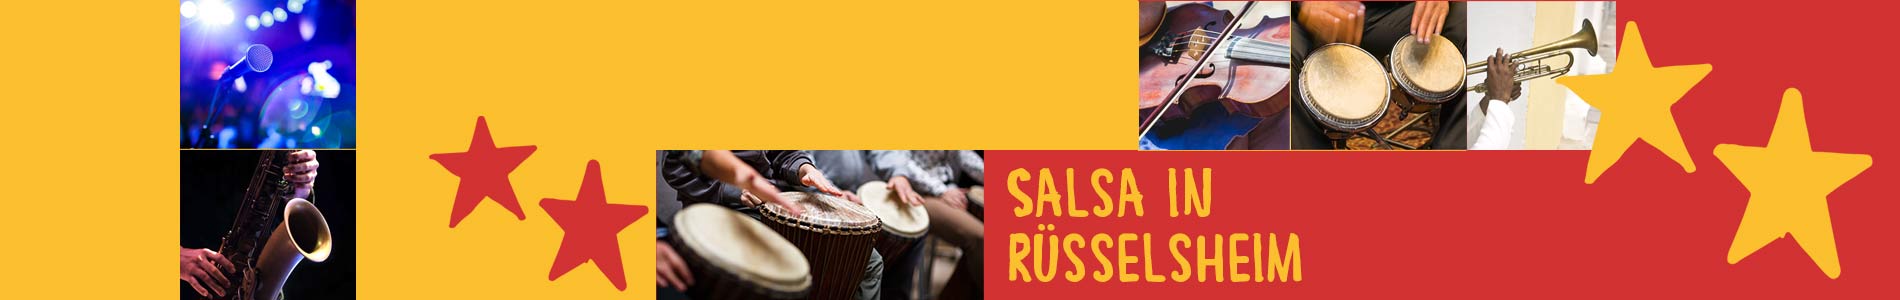 Salsa in Rüsselsheim – Salsa lernen und tanzen, Tanzkurse, Partys, Veranstaltungen